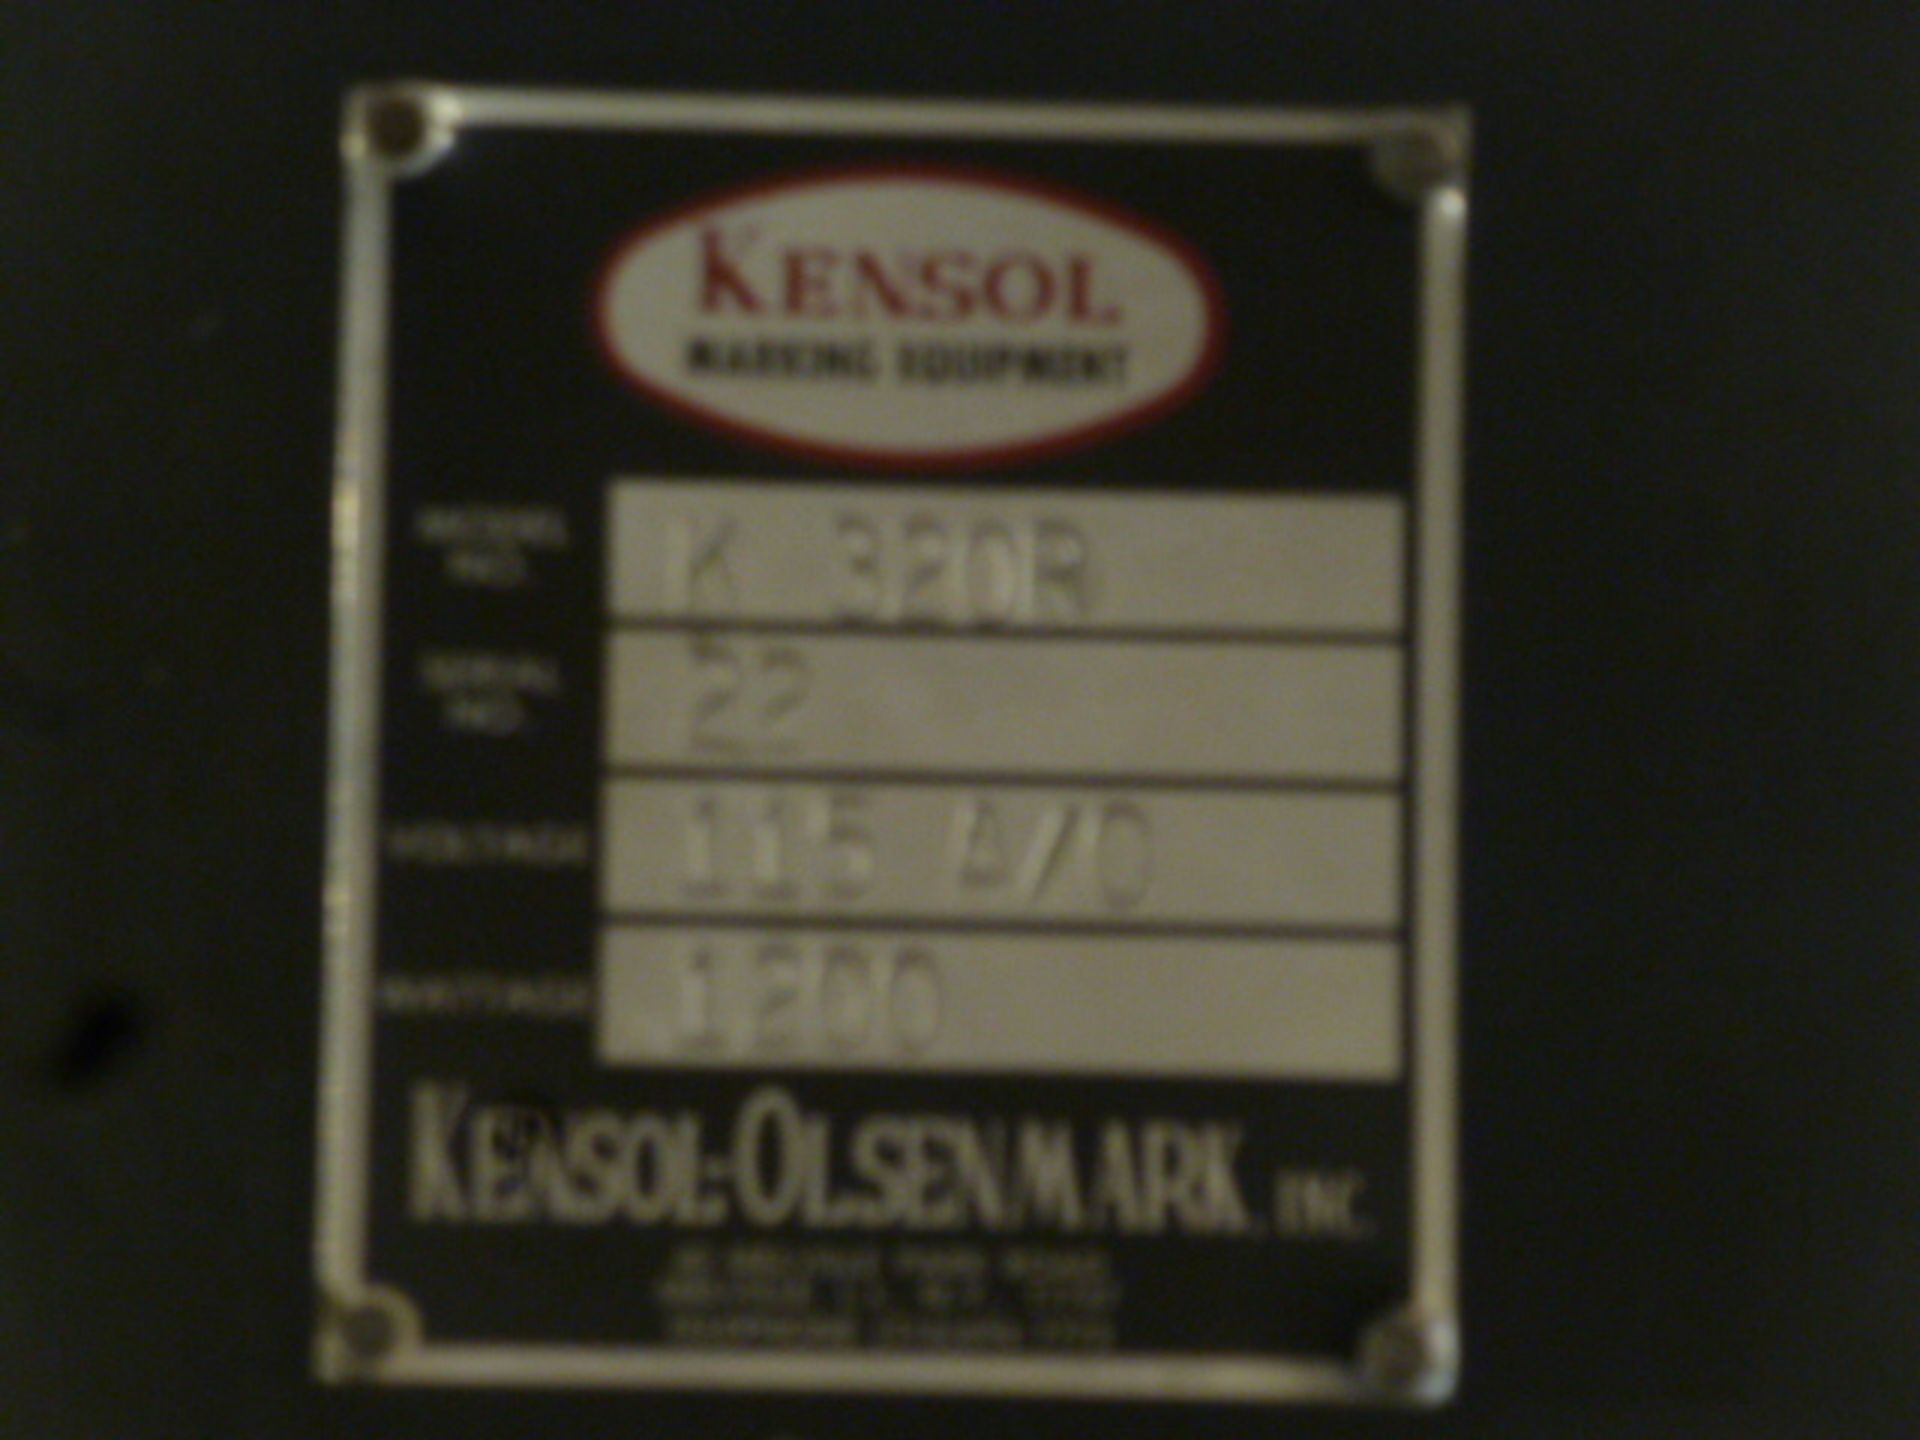 Kensol-Olsenmark Hot Stamping Press, m/n K320R, s/n 22 - Image 4 of 4